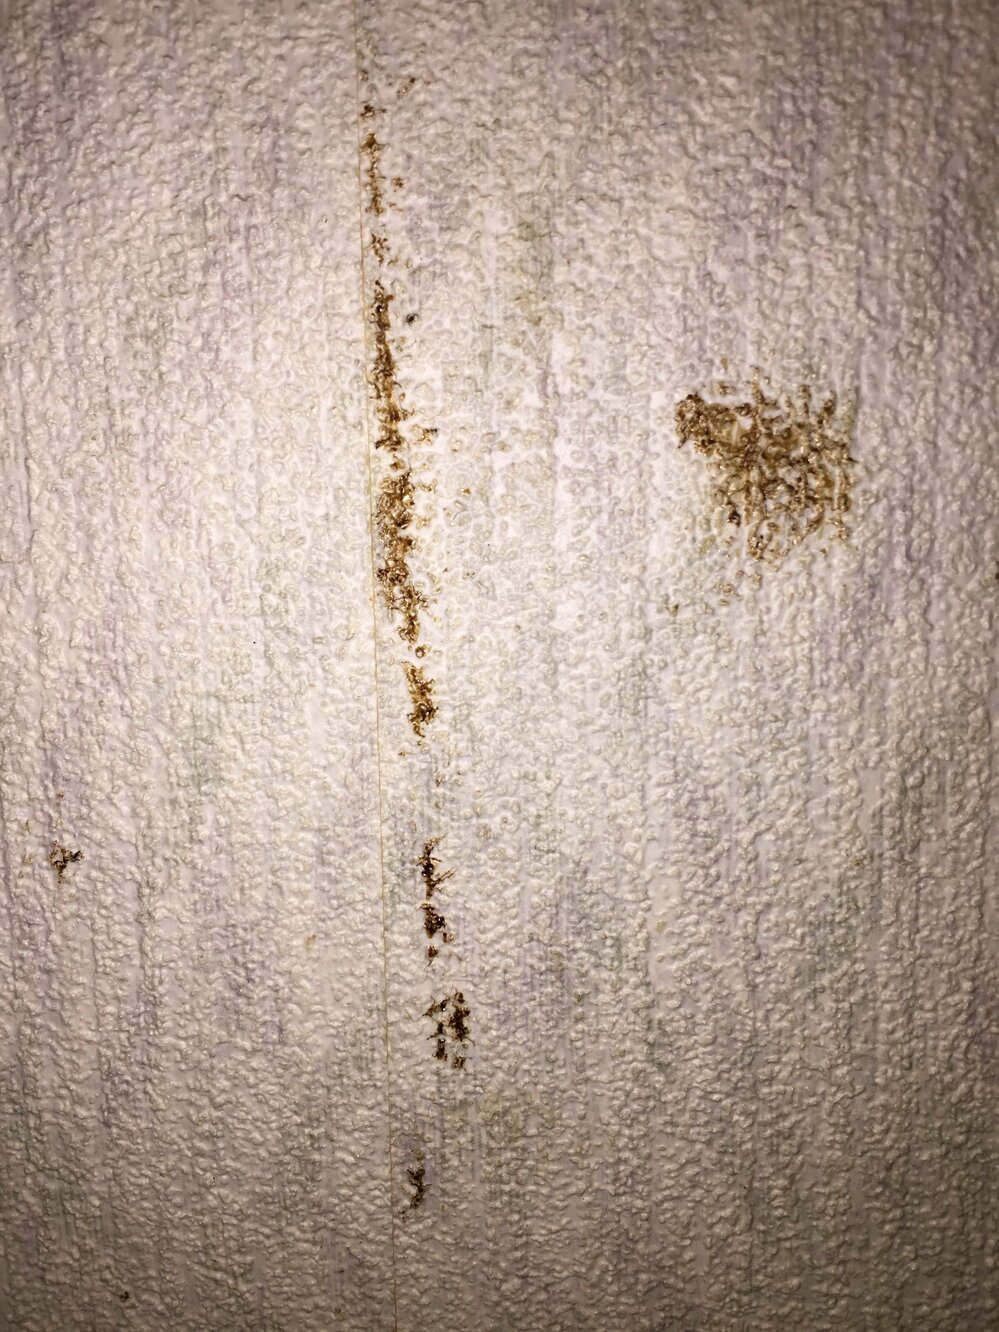 壁紙の汚れ ゴキブリの糞 壁紙の汚れ ゴキブリの糞でしょうか 詳しい Yahoo 知恵袋